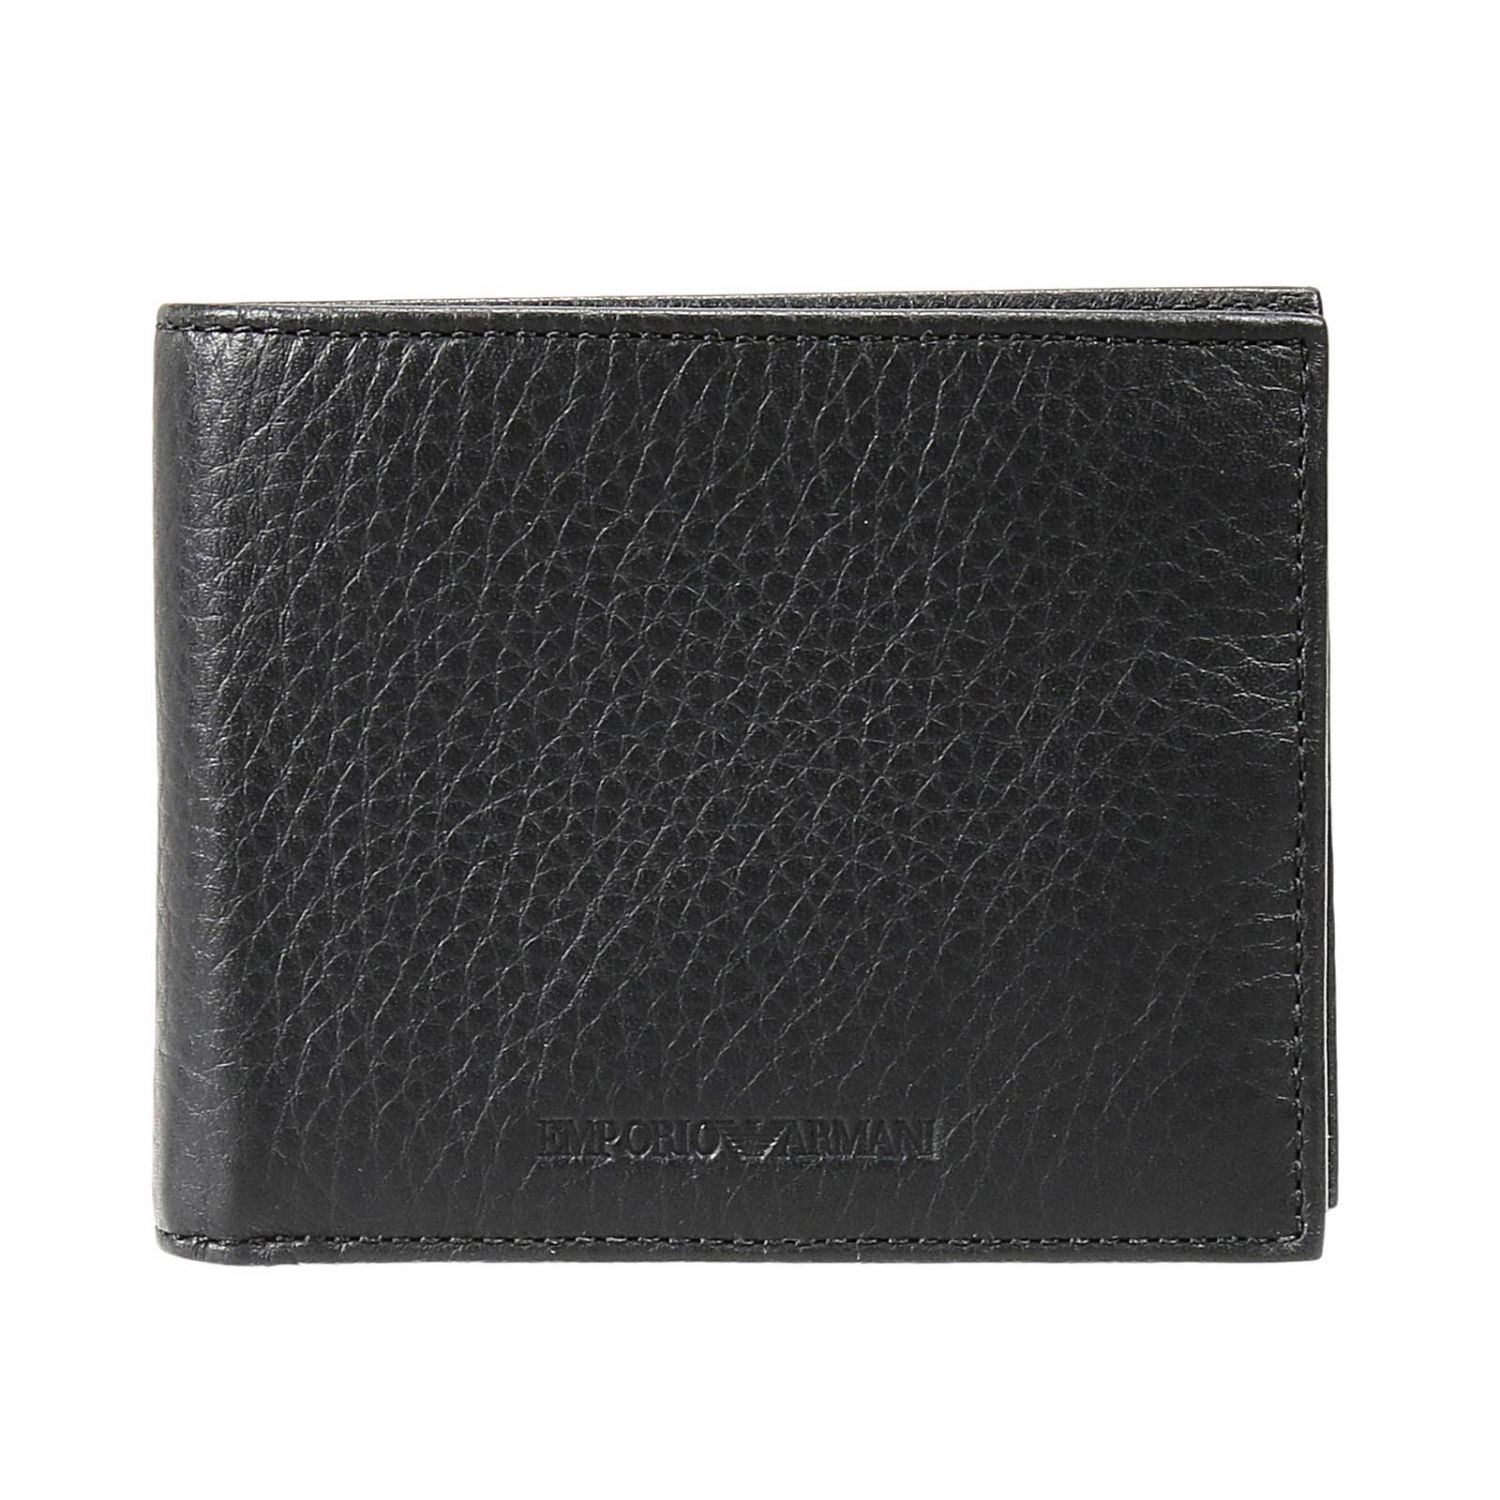 Emporio armani Wallet in Black for Men | Lyst